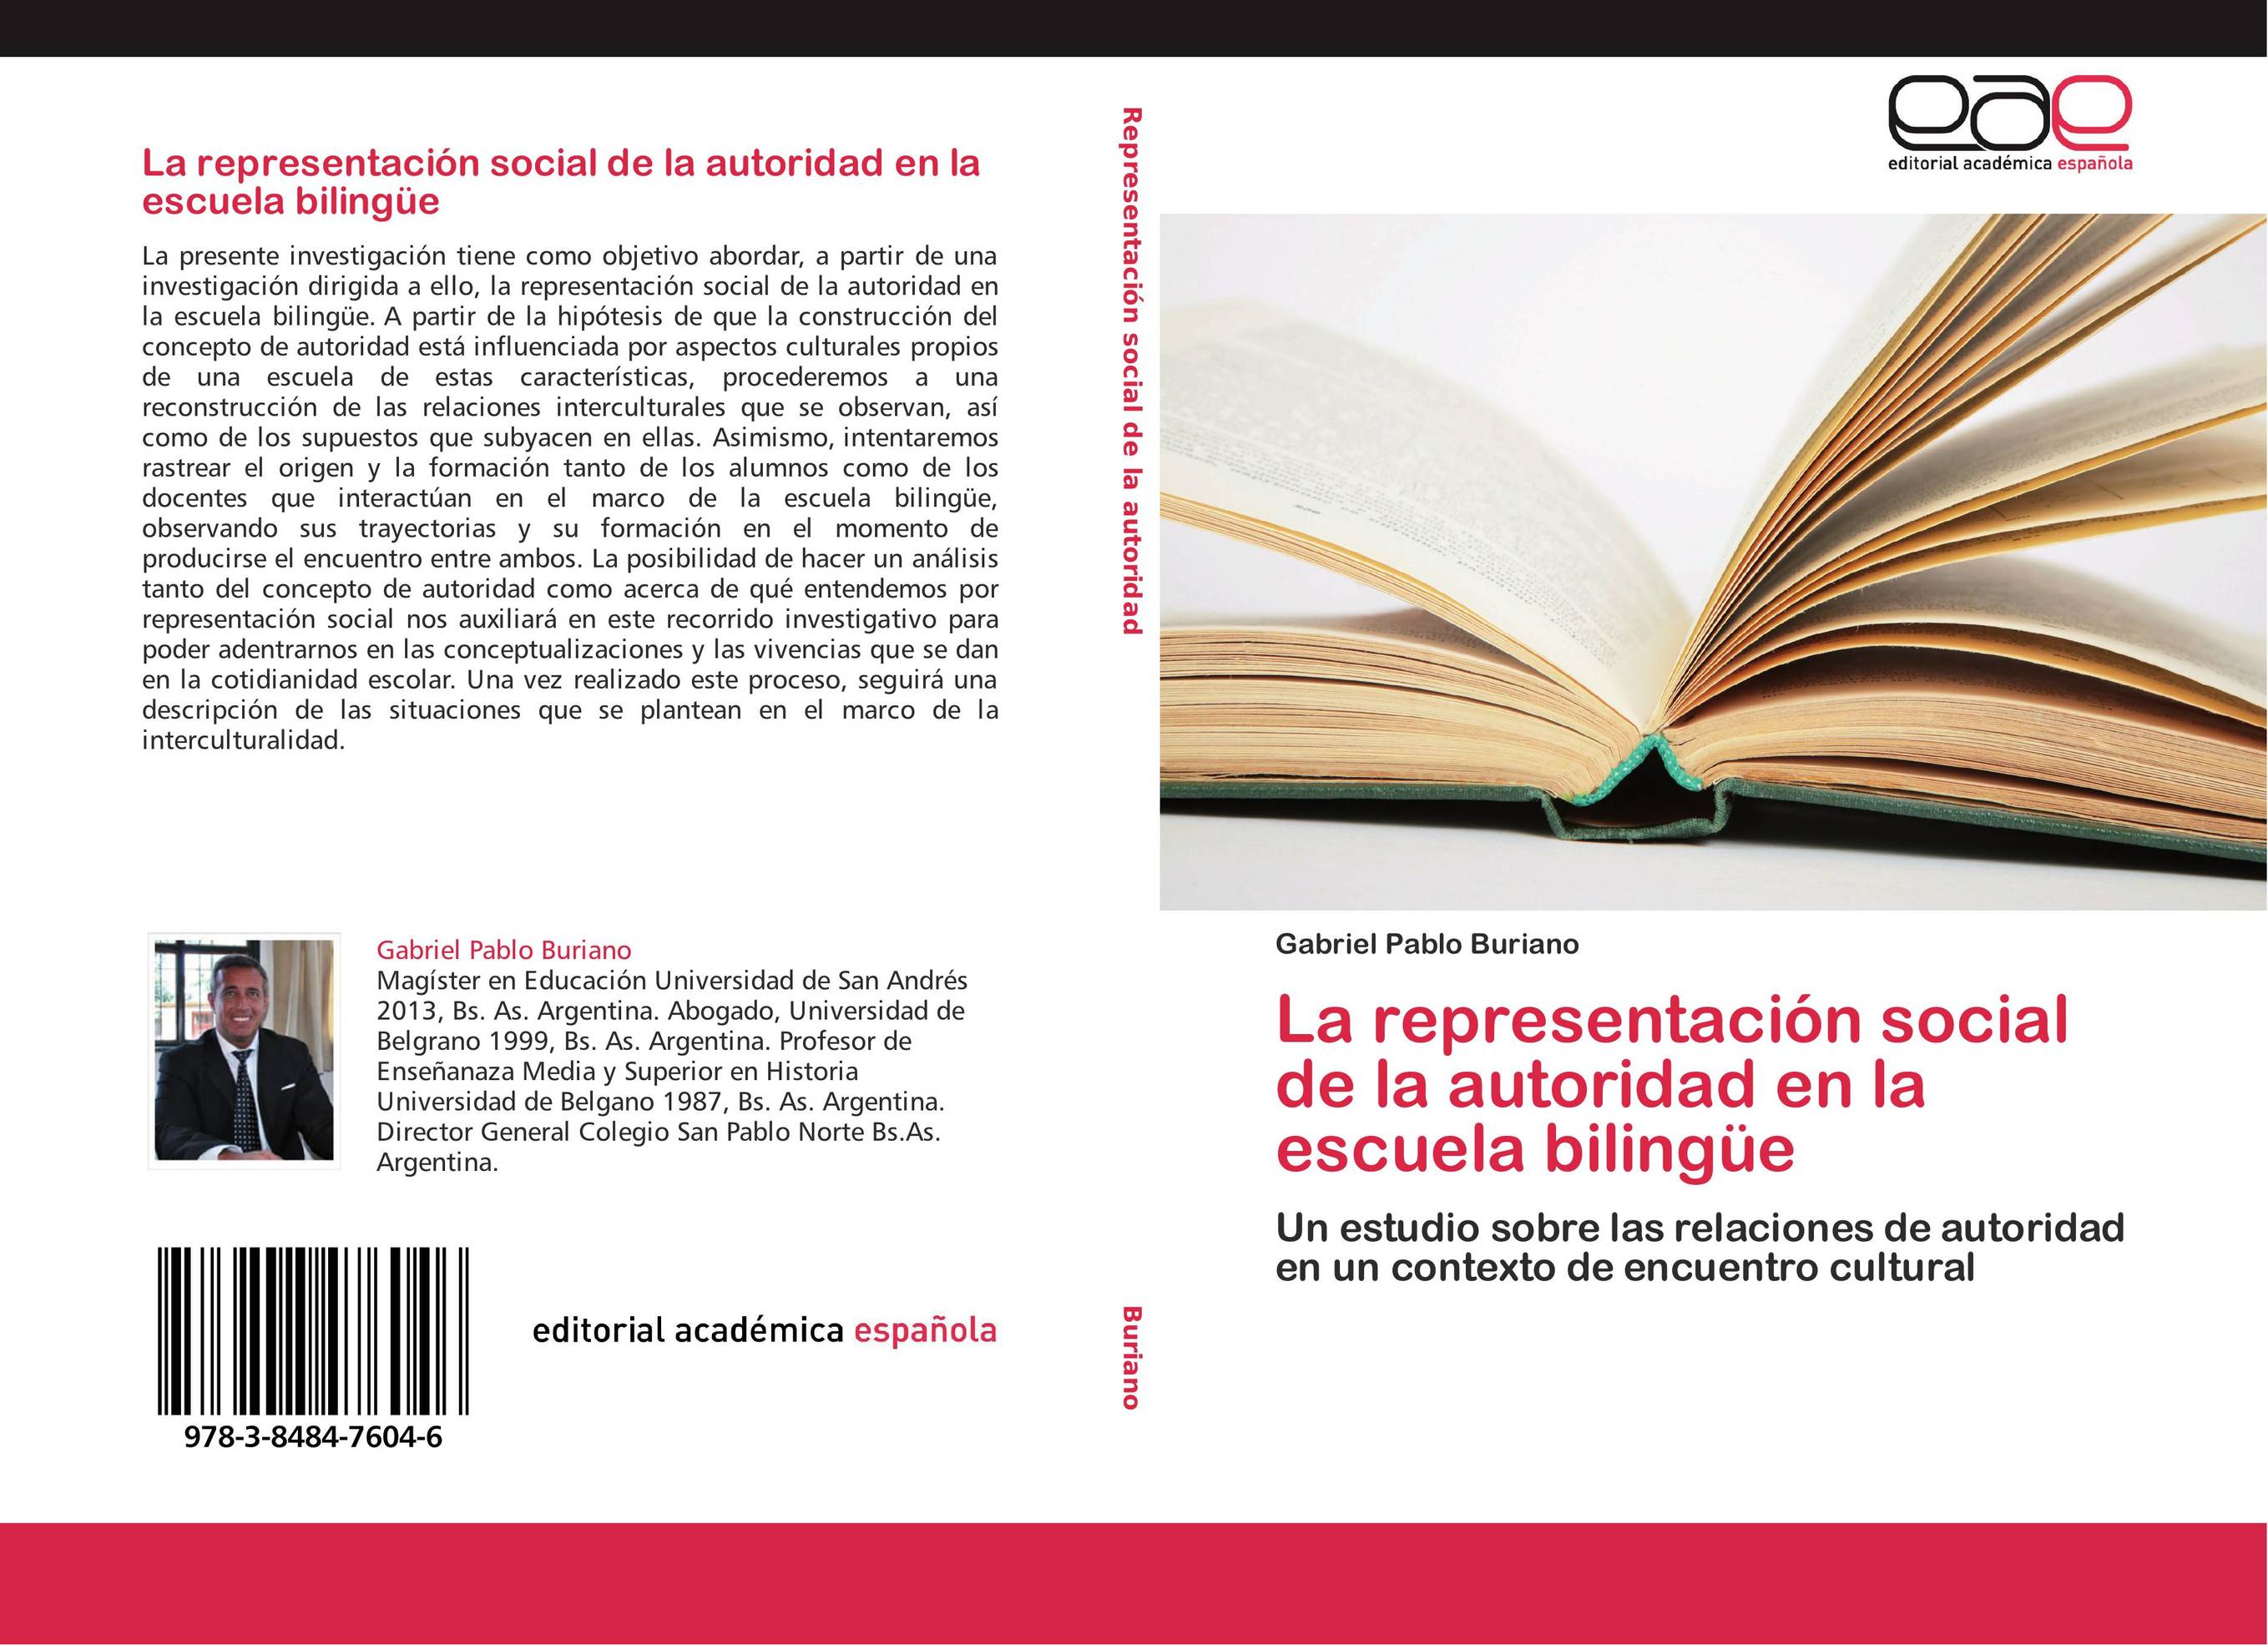 La representación social de la autoridad en la escuela bilingüe